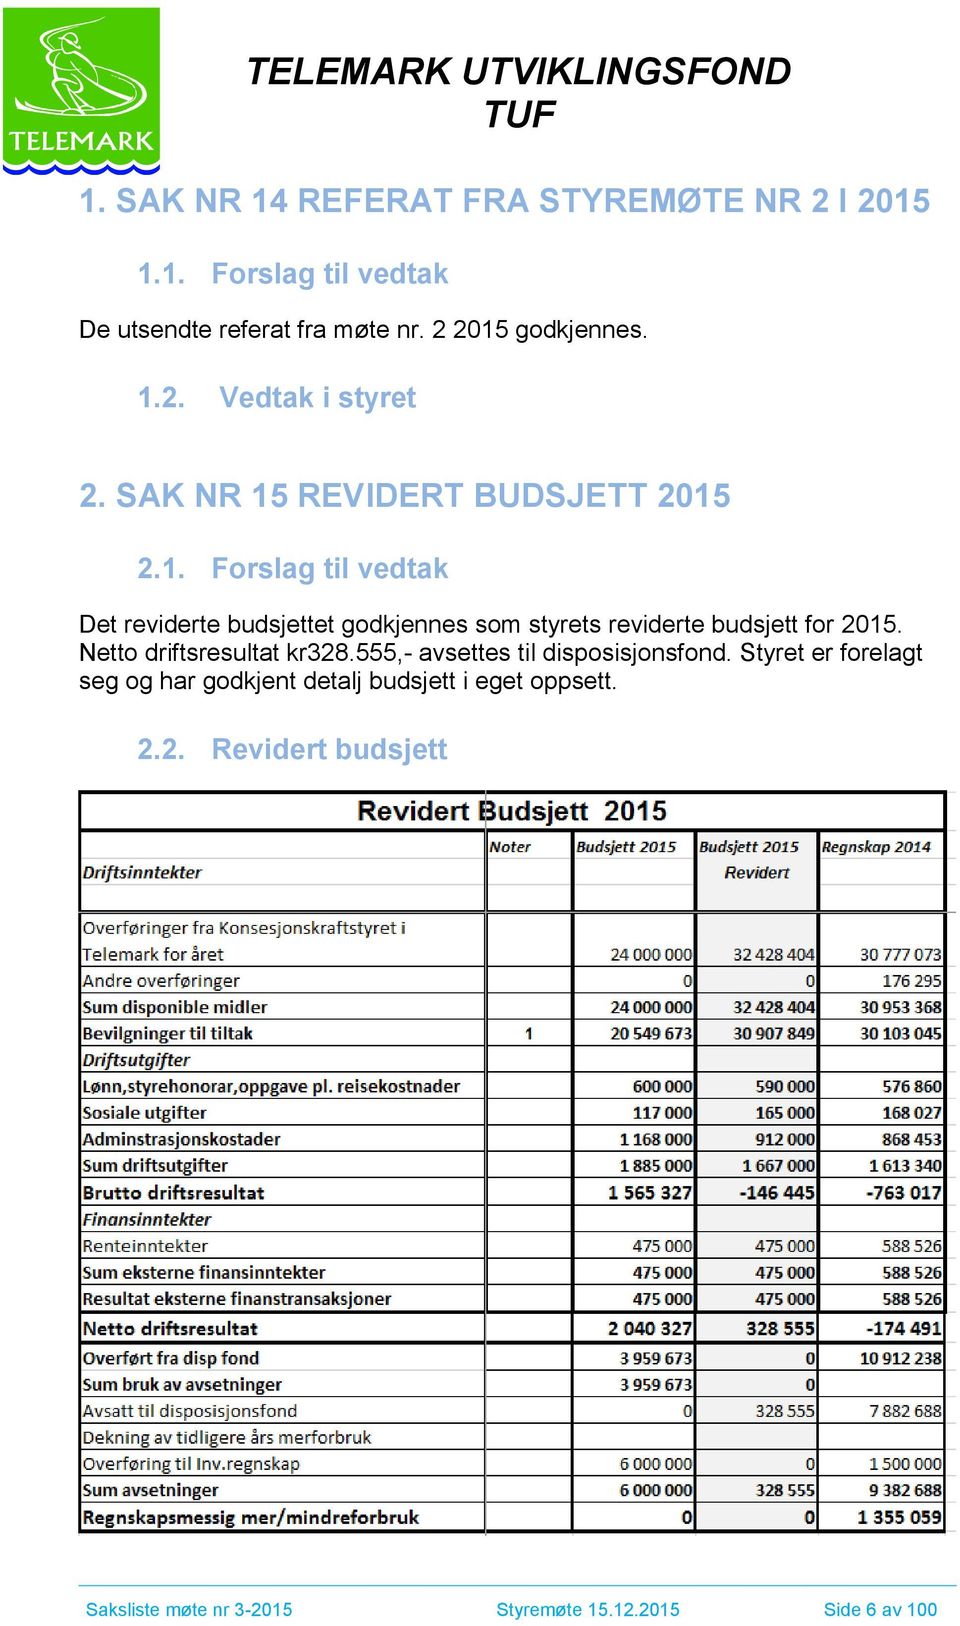 Netto driftsresultat kr328.555,- avsettes til disposisjonsfond.